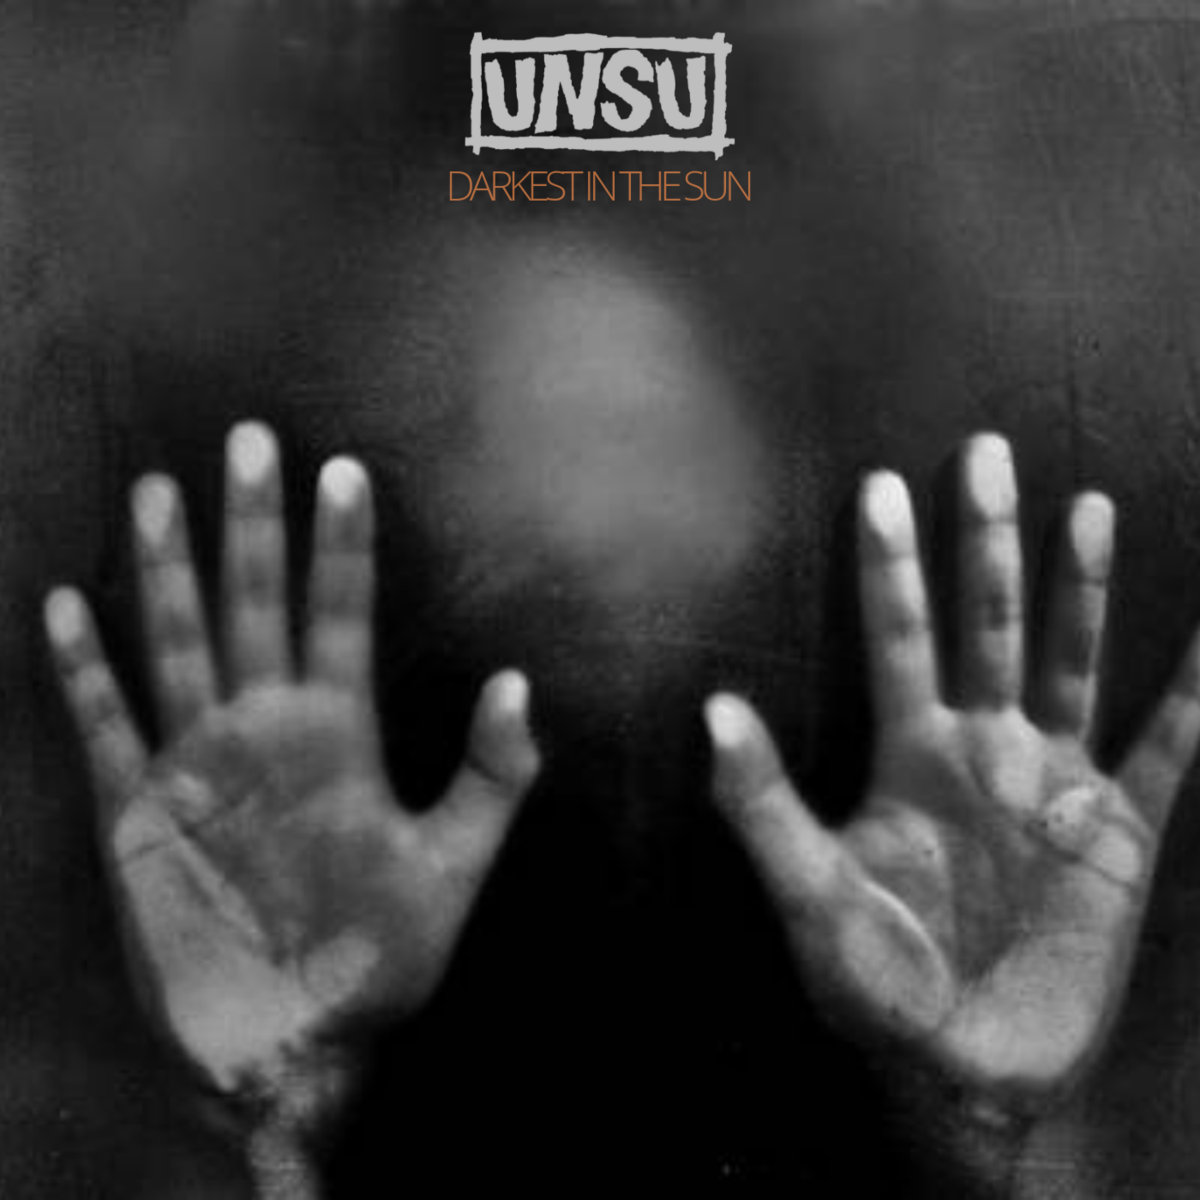 UNSU - Darkest in the sun